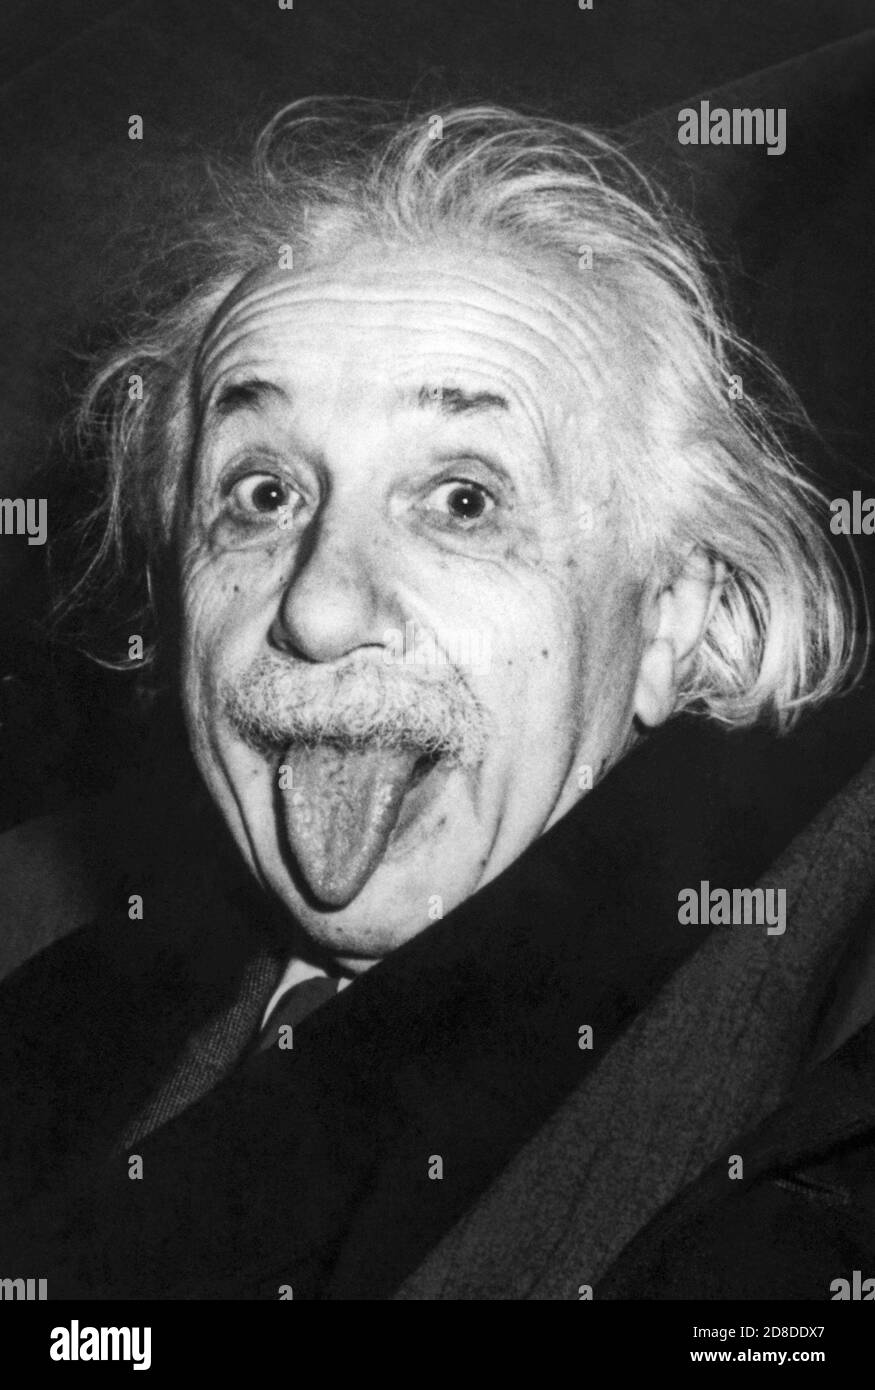 Foto iconica di Albert Einstein che stacca la lingua in occasione della sua 72a festa di compleanno all'Università di Princeton il 14 marzo 1951. (Foto di Arthur Sasse) Foto Stock